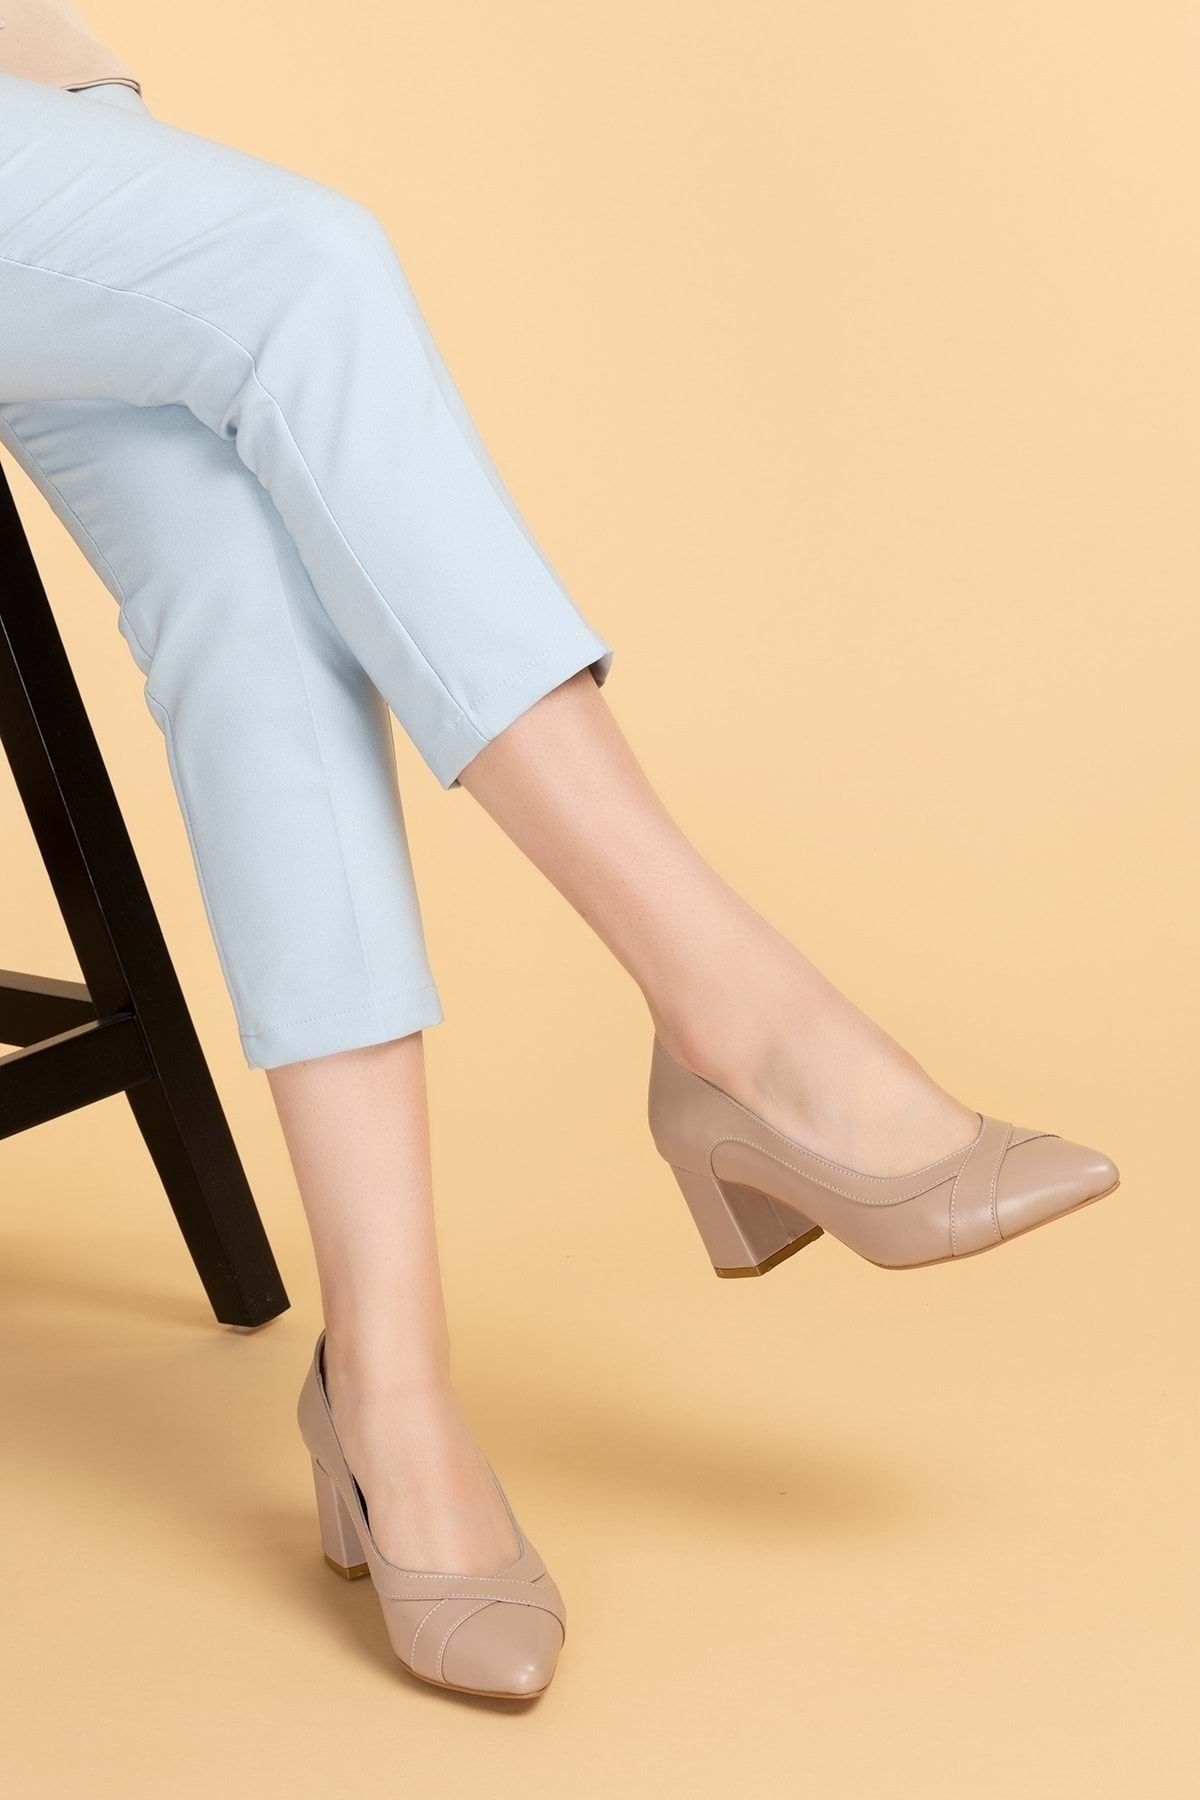 Gondol Kadın Hakiki Deri Rahat Klasik Topuklu Ayakkabı Şhn.722 - Vizon - 41